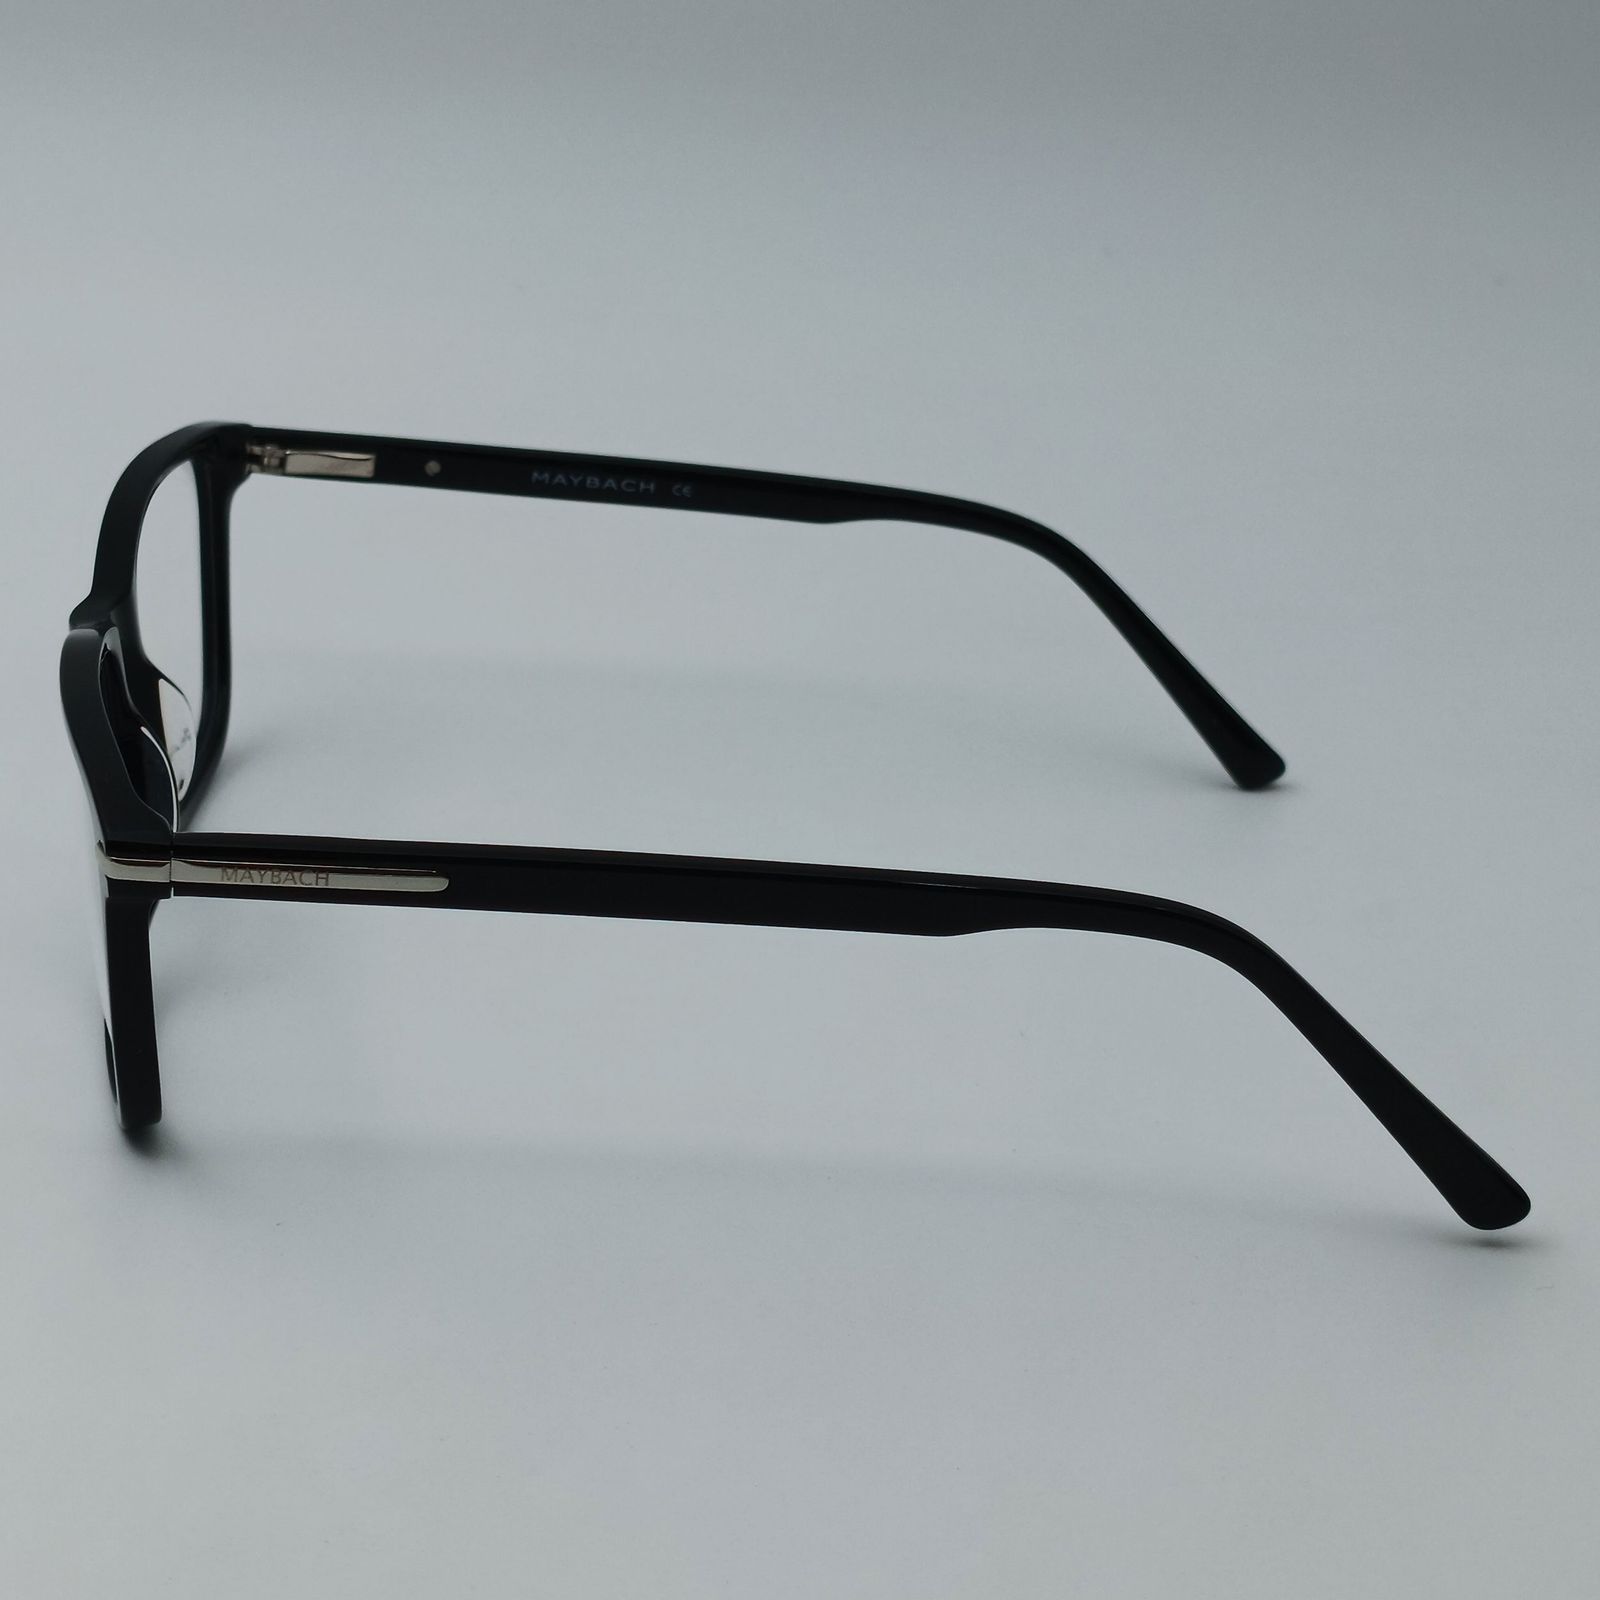 فریم عینک طبی میباخ مدل 6512 C1 -  - 4